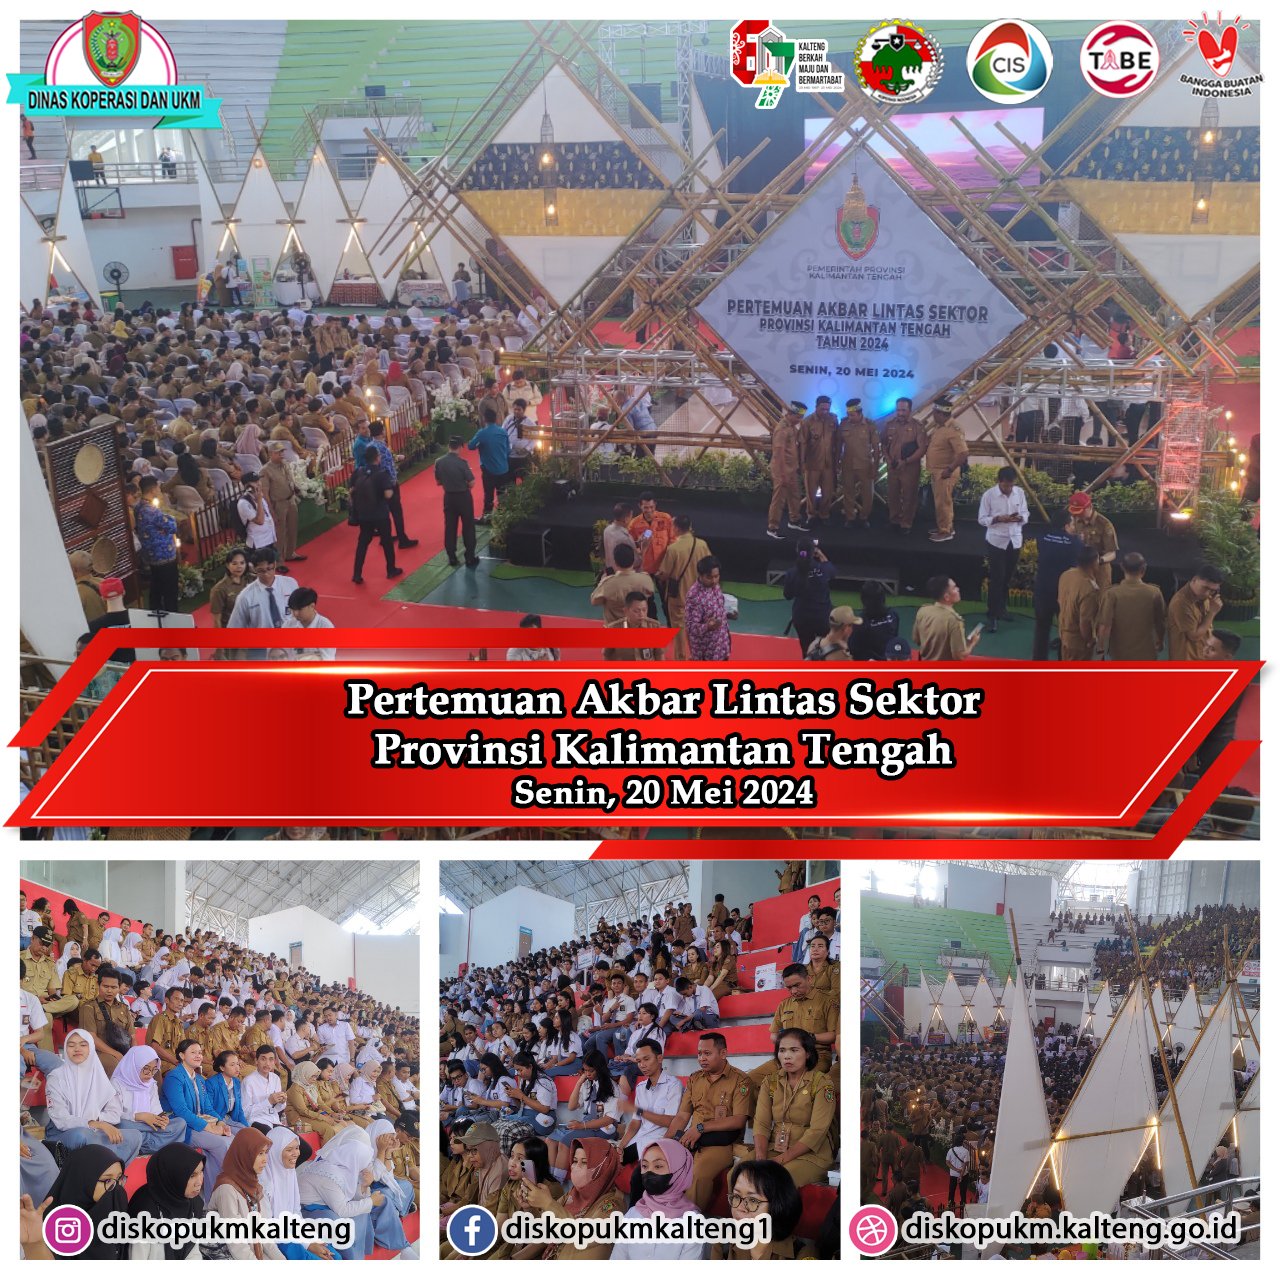 Pertemuan Akbar Lintas Sektor Provinsi Kalimantan Tengah